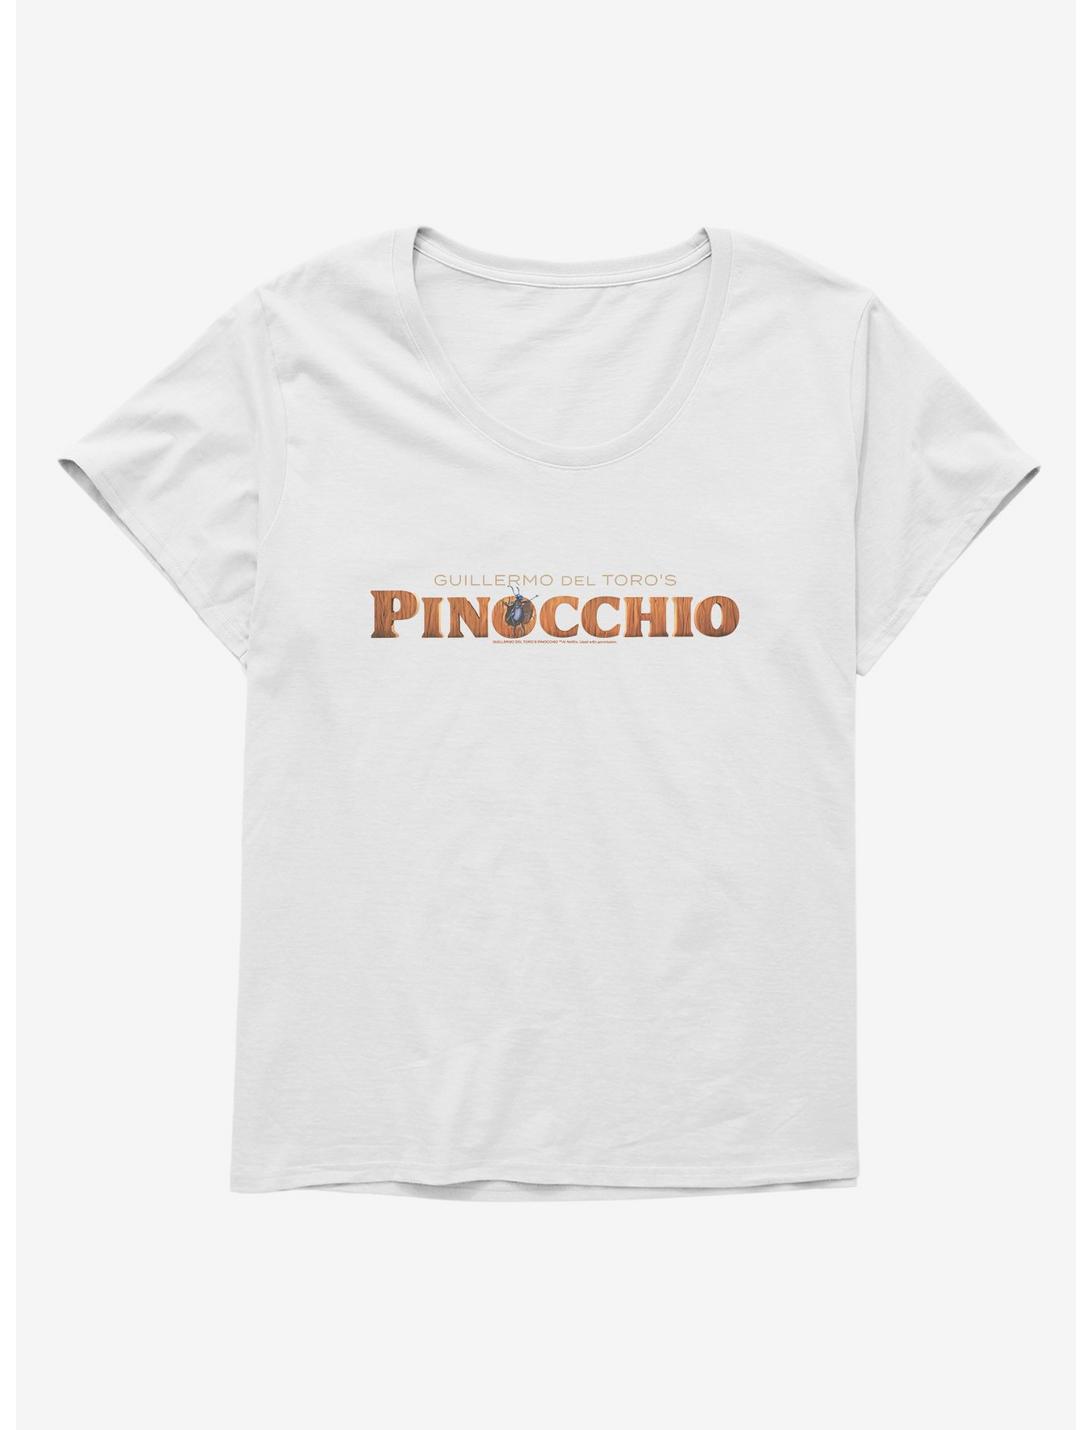 Netflix Pinocchio Film Title Art Girls T-Shirt Plus Size, , hi-res